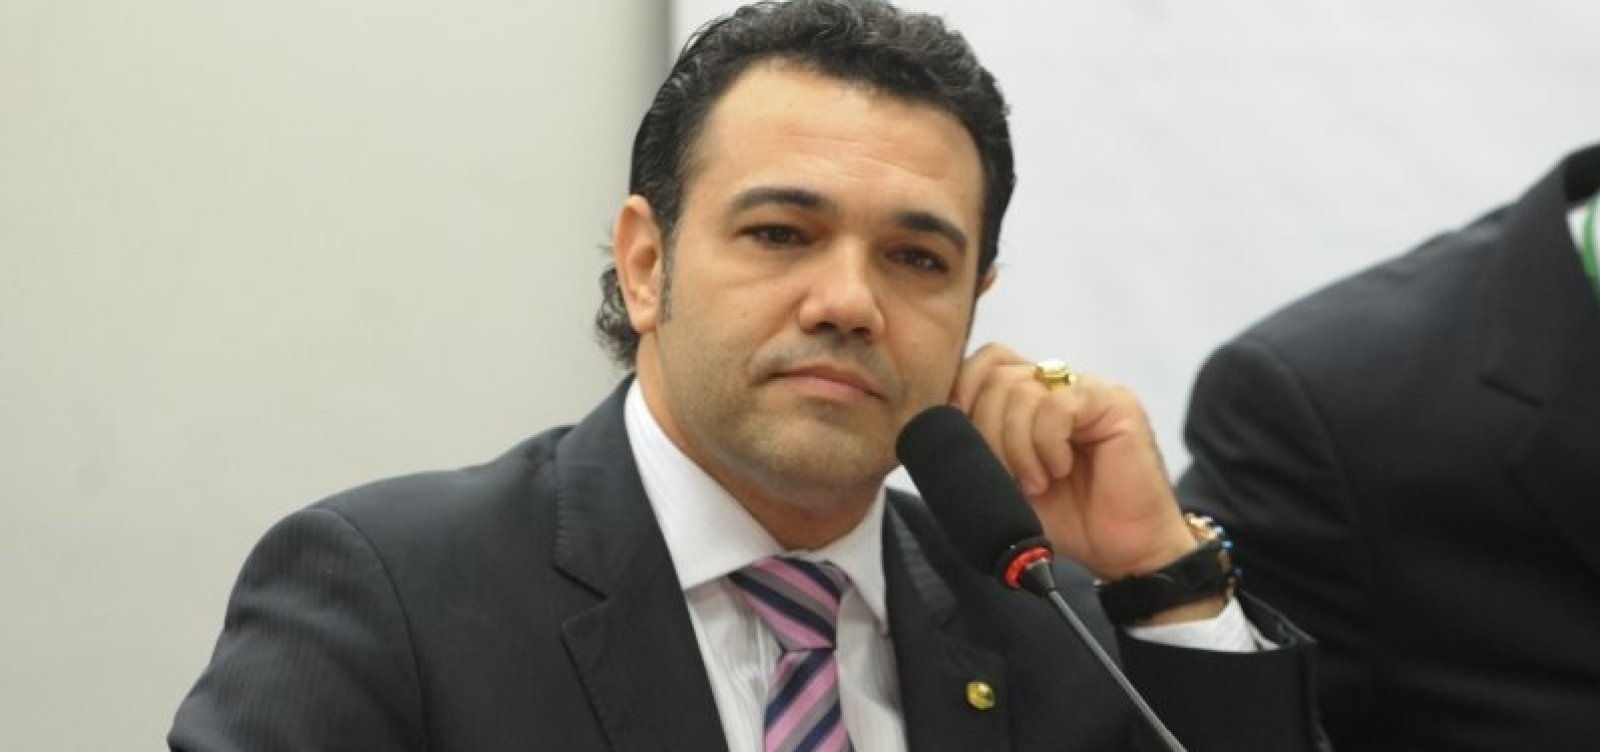 Feliciano culpa porta-voz de Bolsonaro por 'exposição' em café com jornalistas